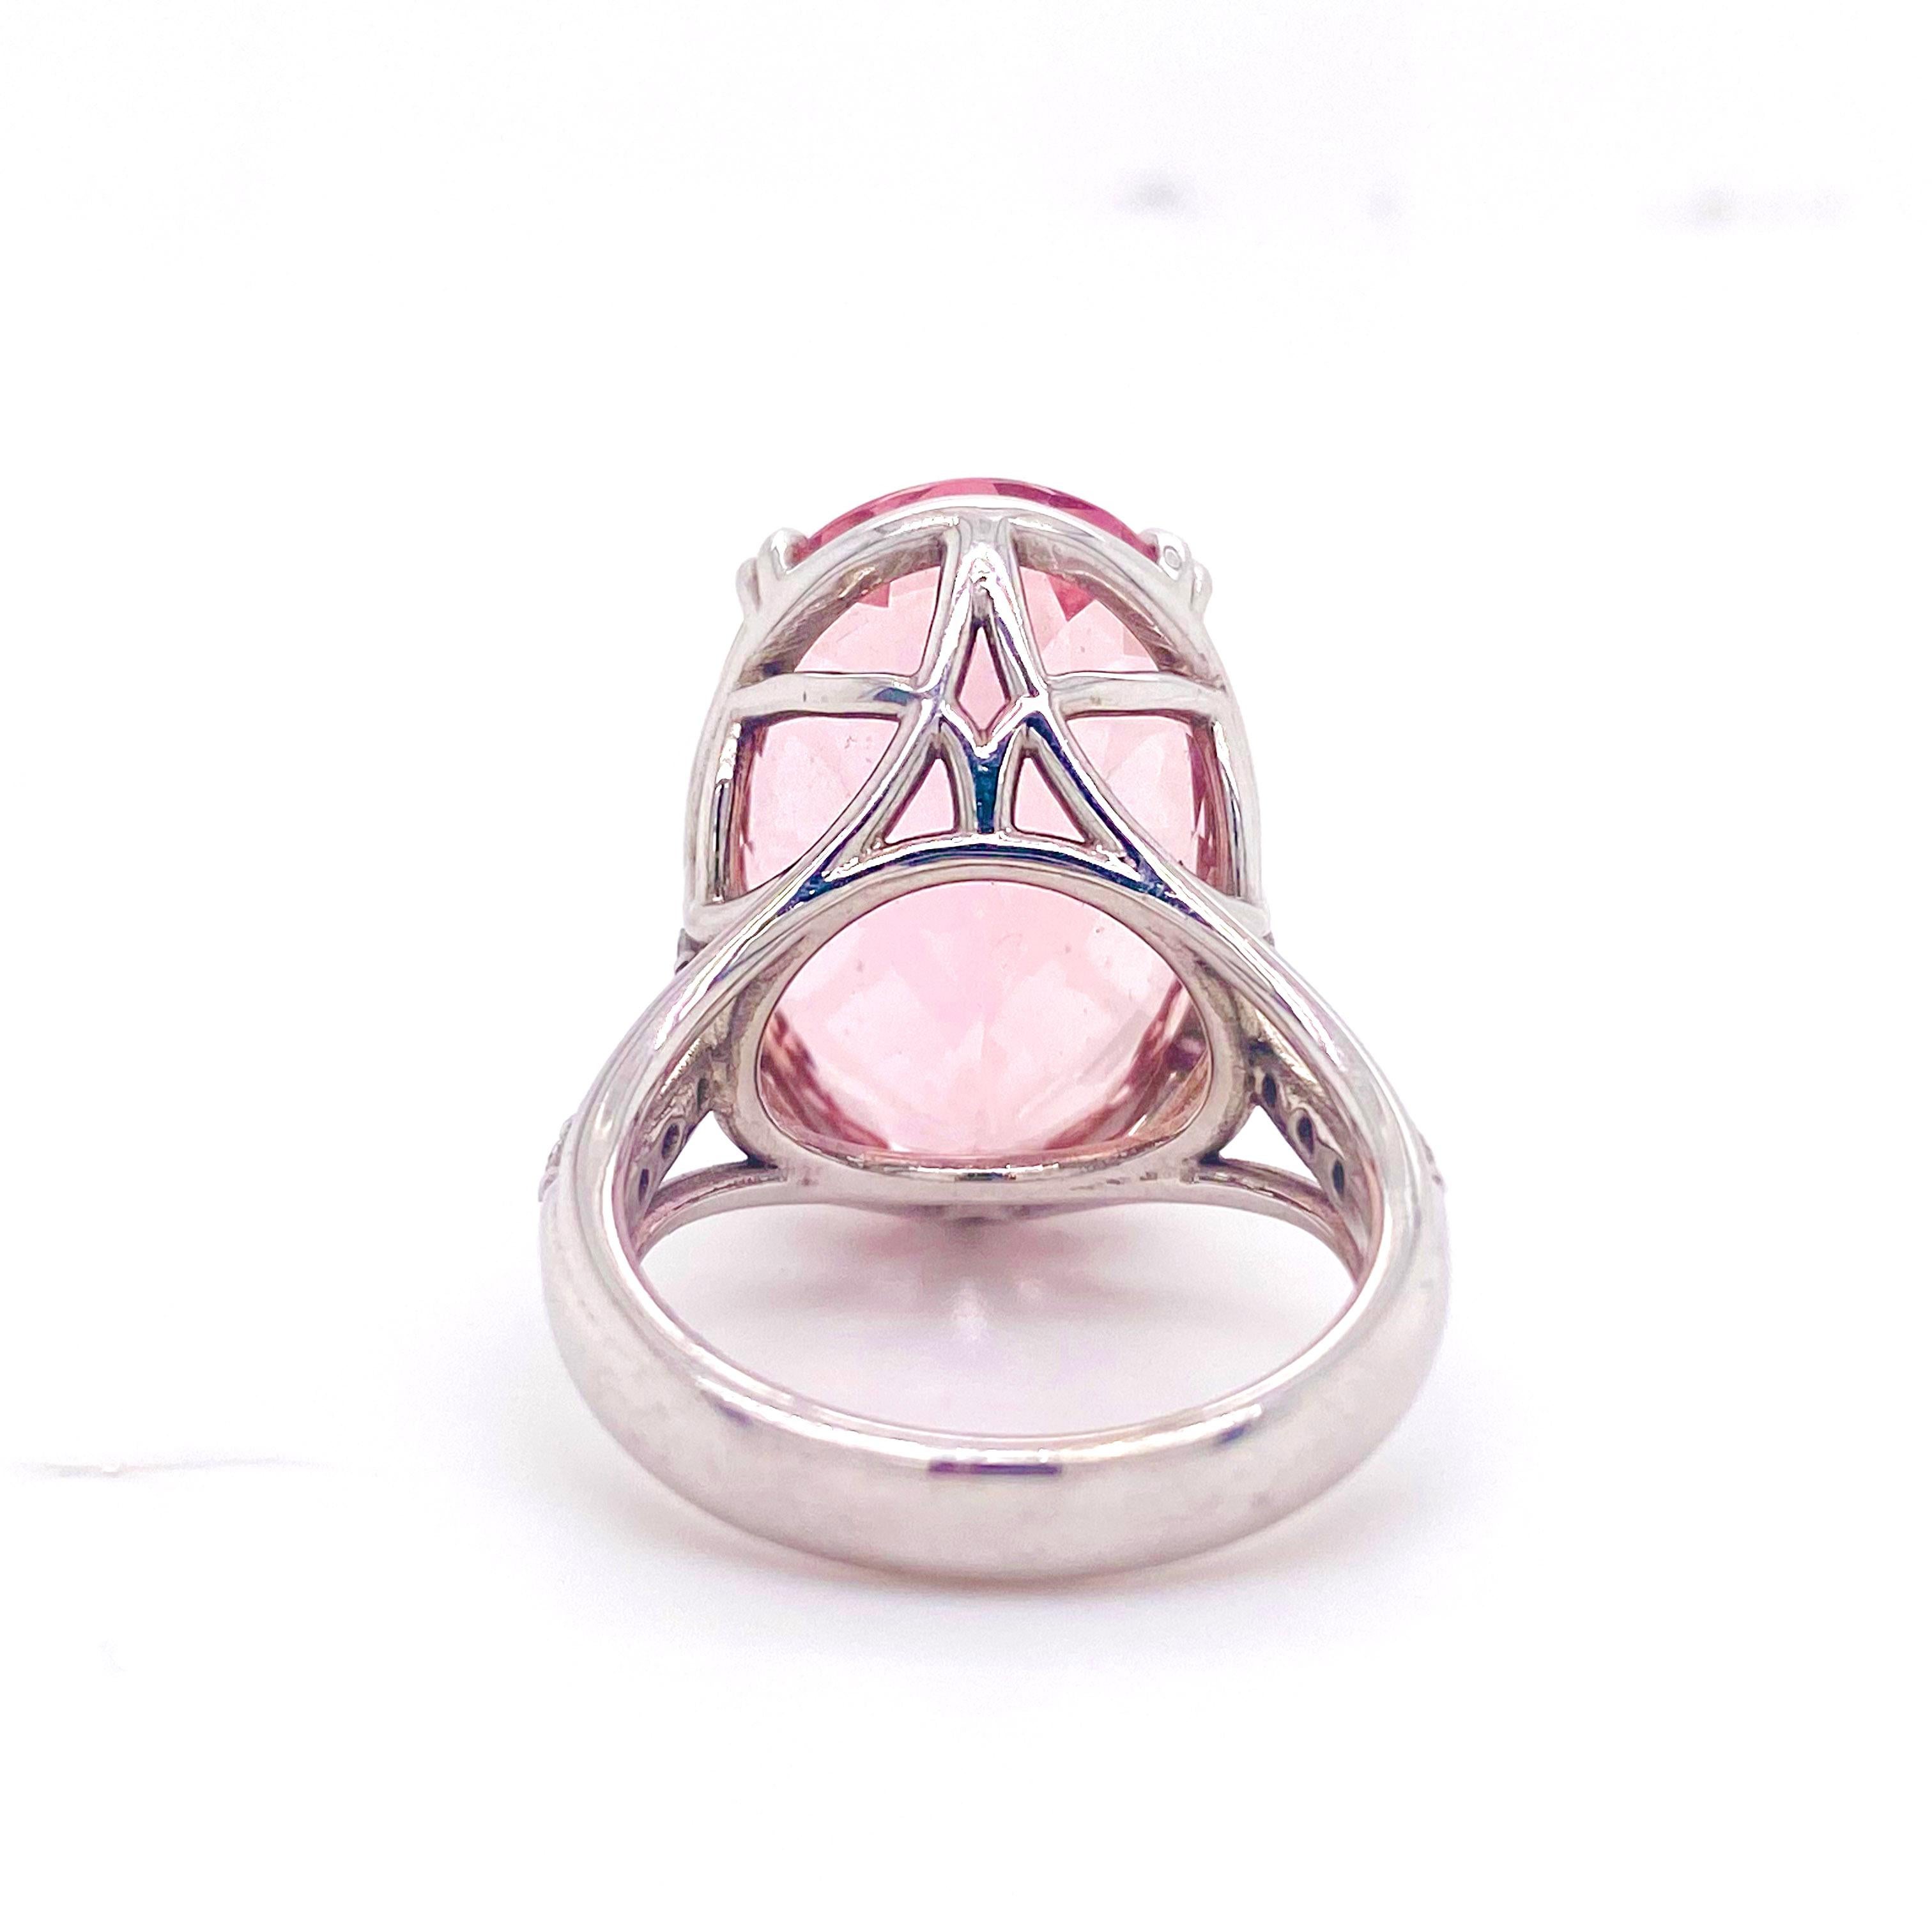 12 carat pink morganite ring cost